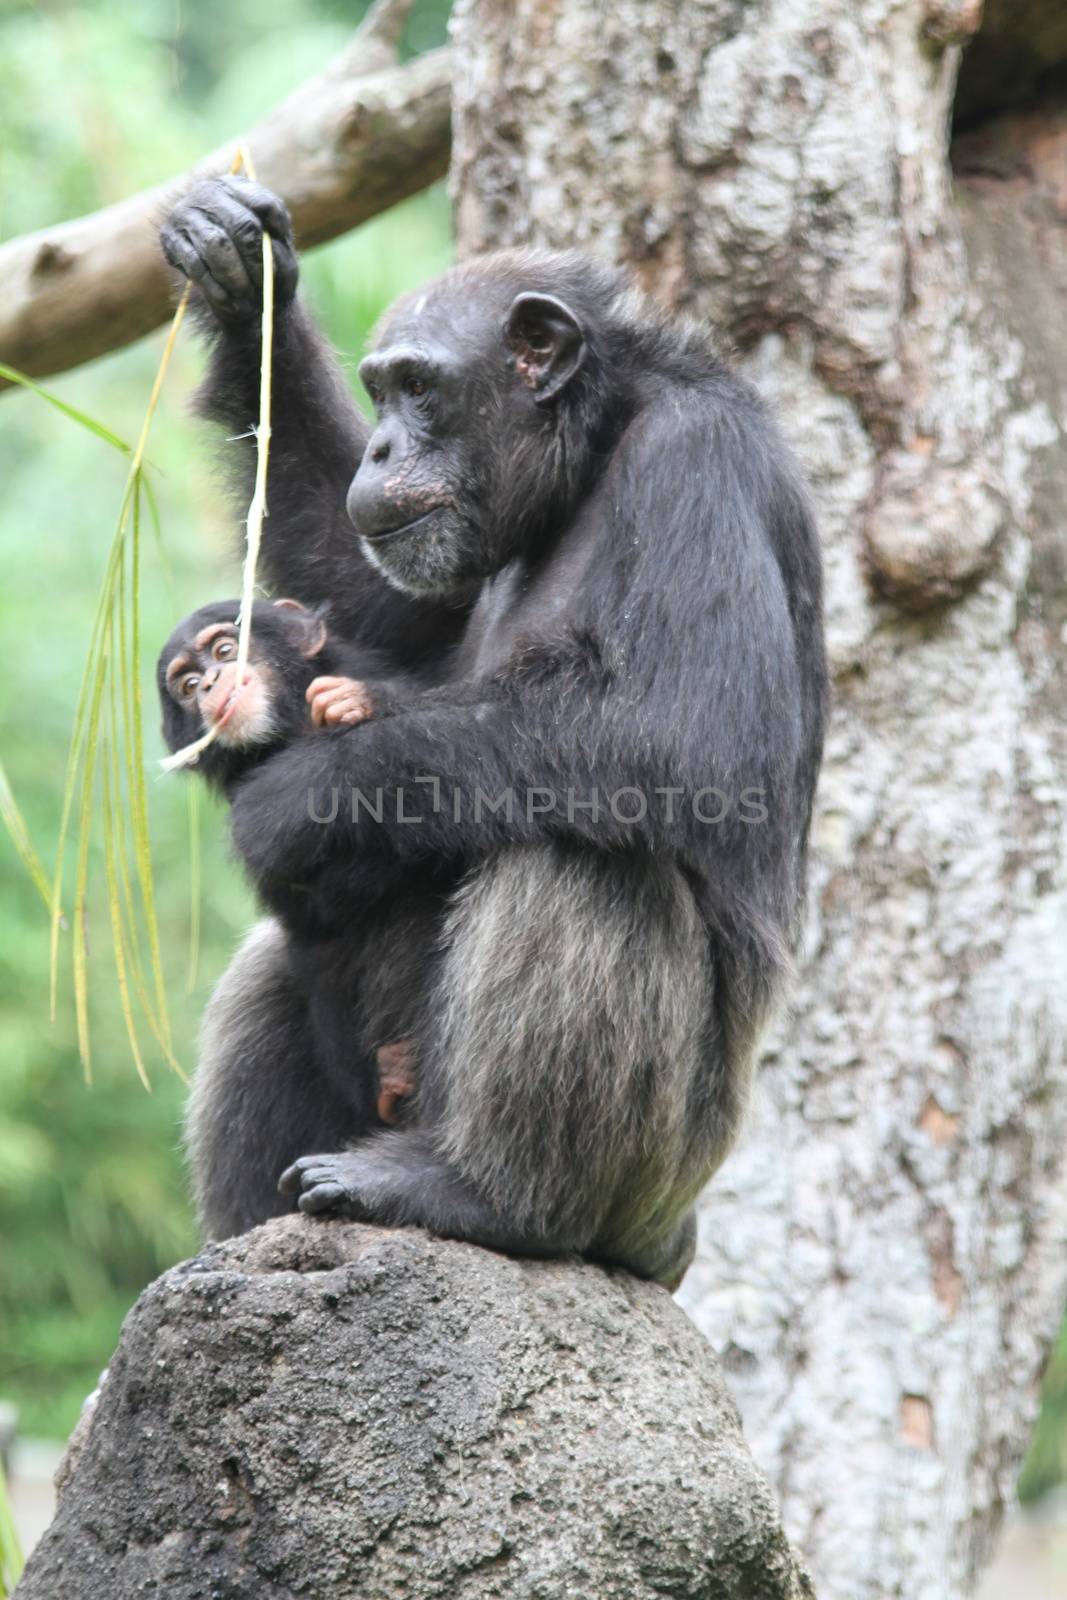 Chimpanzee by Kitch